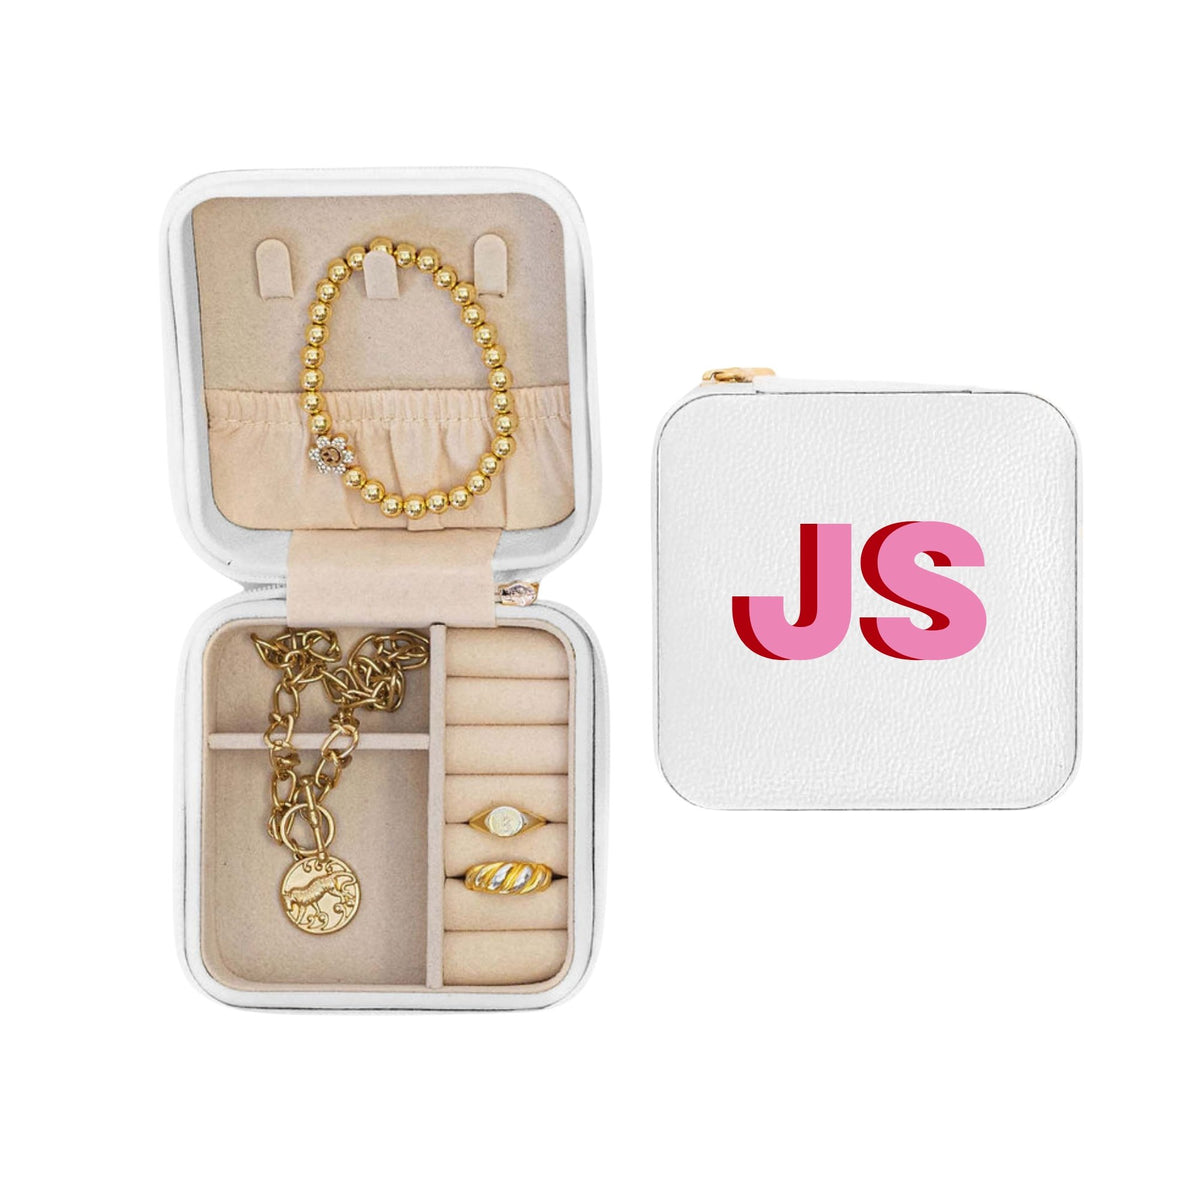 Monogram Jewelry Box - 4 Colors